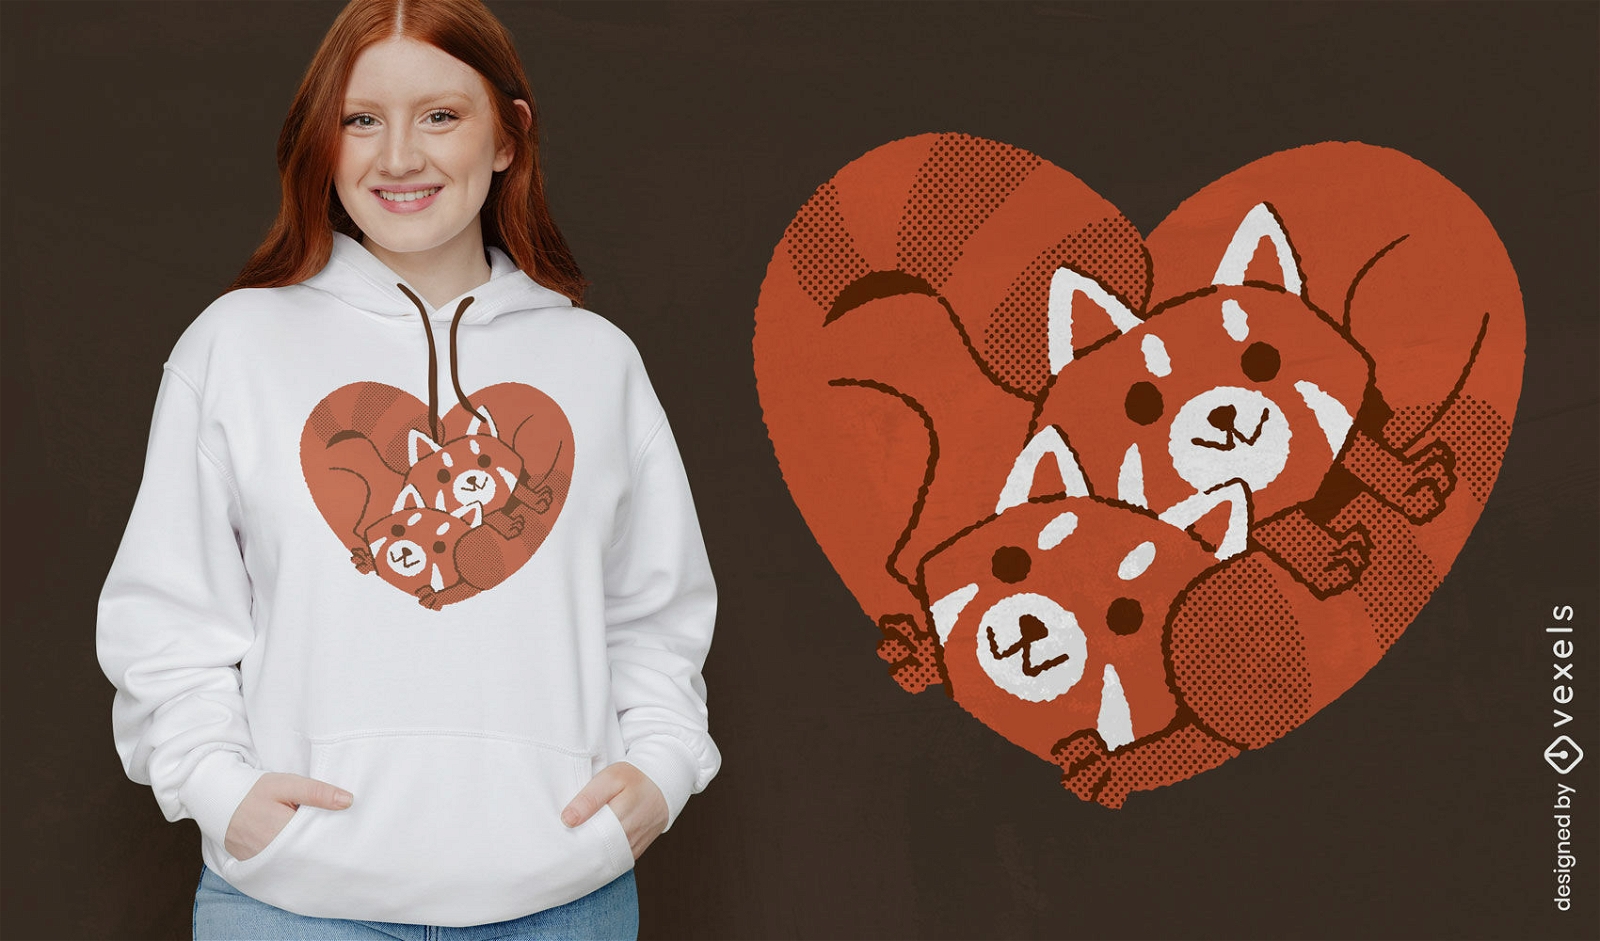 Red panda heart t-shirt design